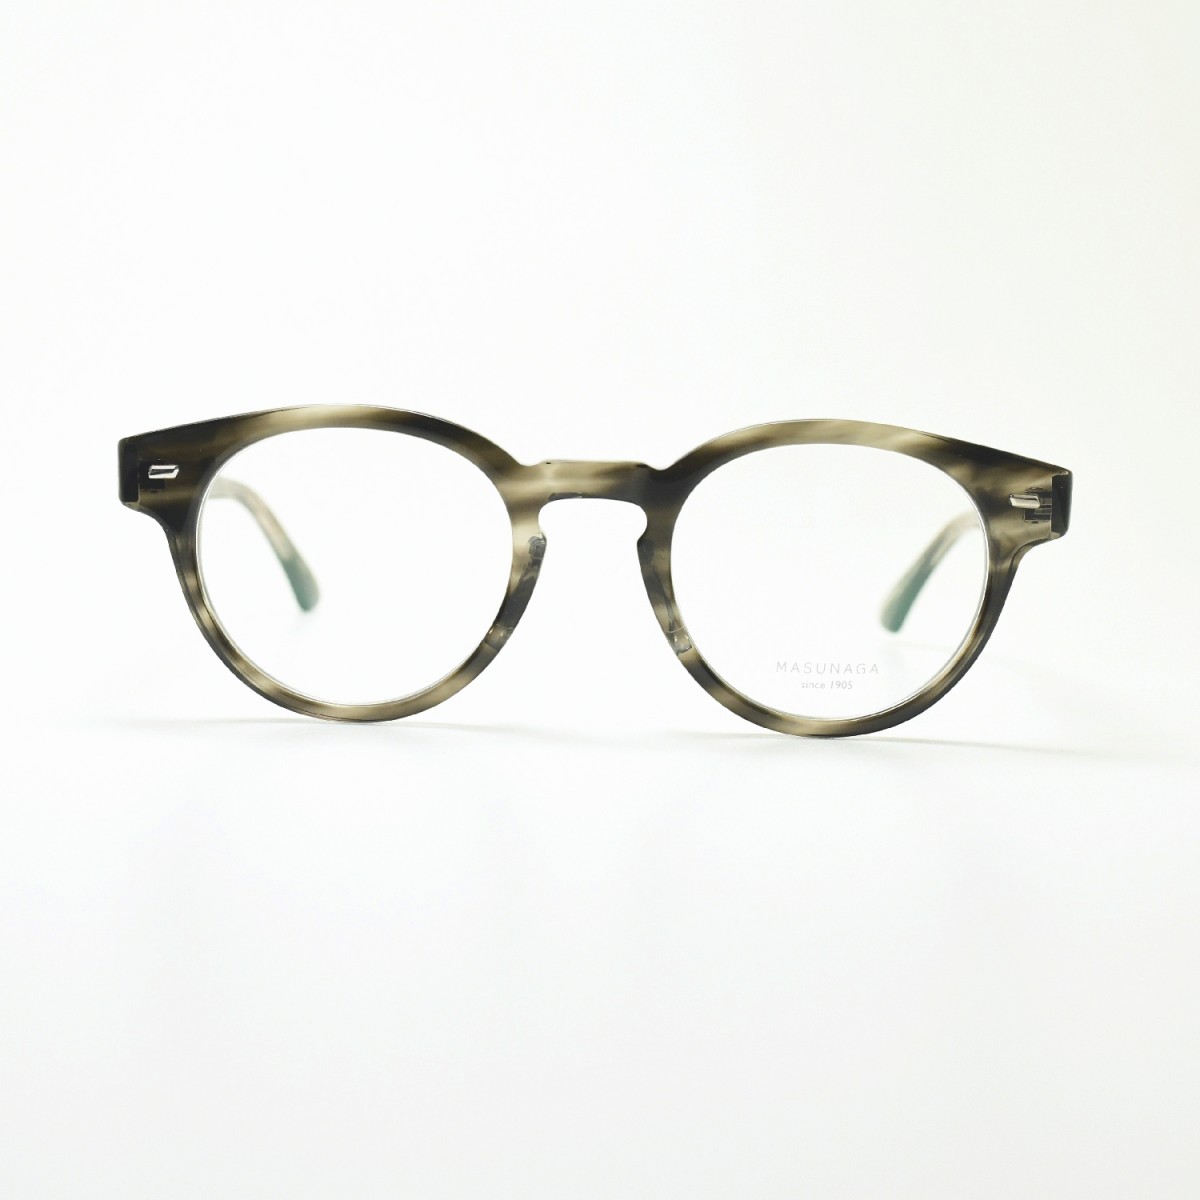 増永眼鏡 MASUNAGA 光輝 064 col-34 GREY メガネ 眼鏡 めがね メンズ レディース おしゃれ ブランド 人気 おすすめ フレーム  流行り 度付き レンズ